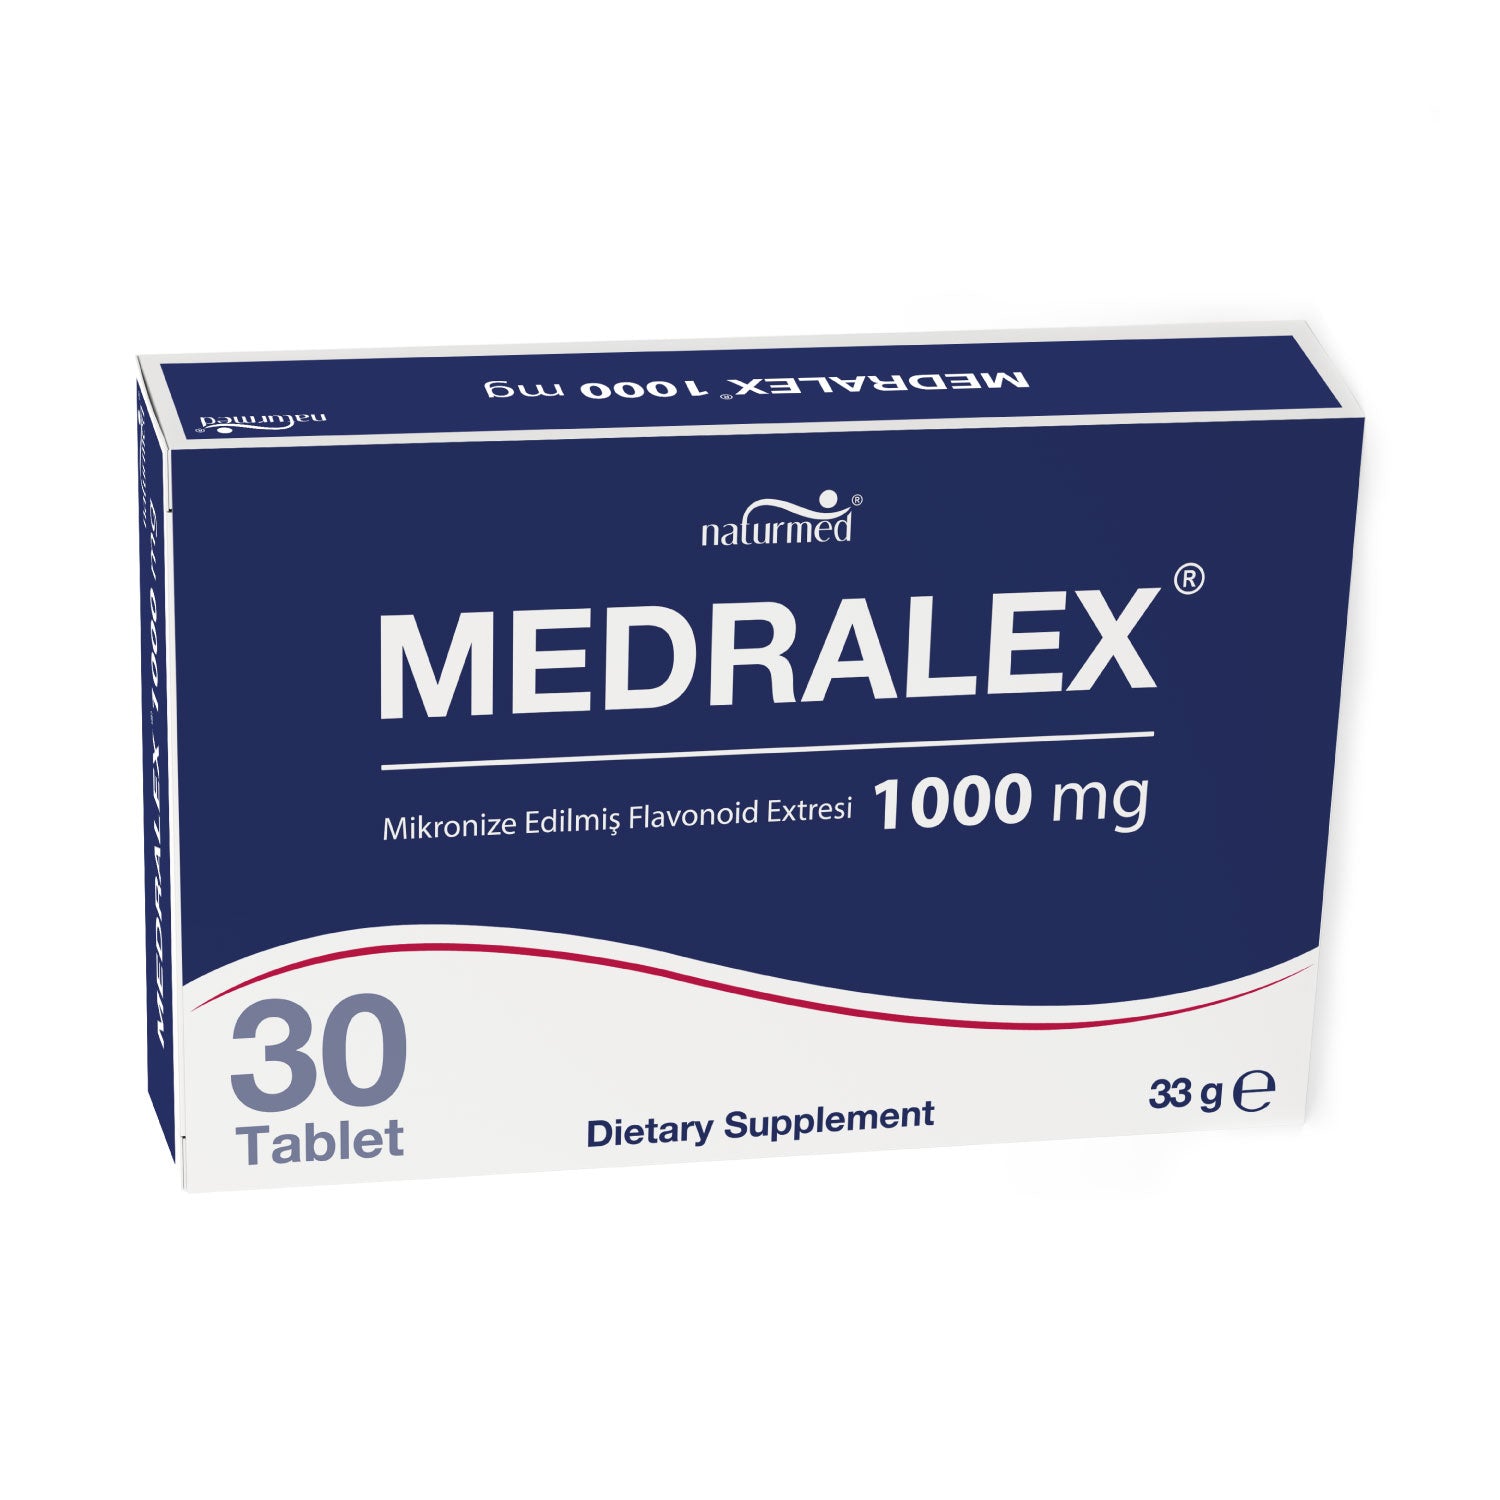 Medralex® Tablet - ECZ PUAN Harcama